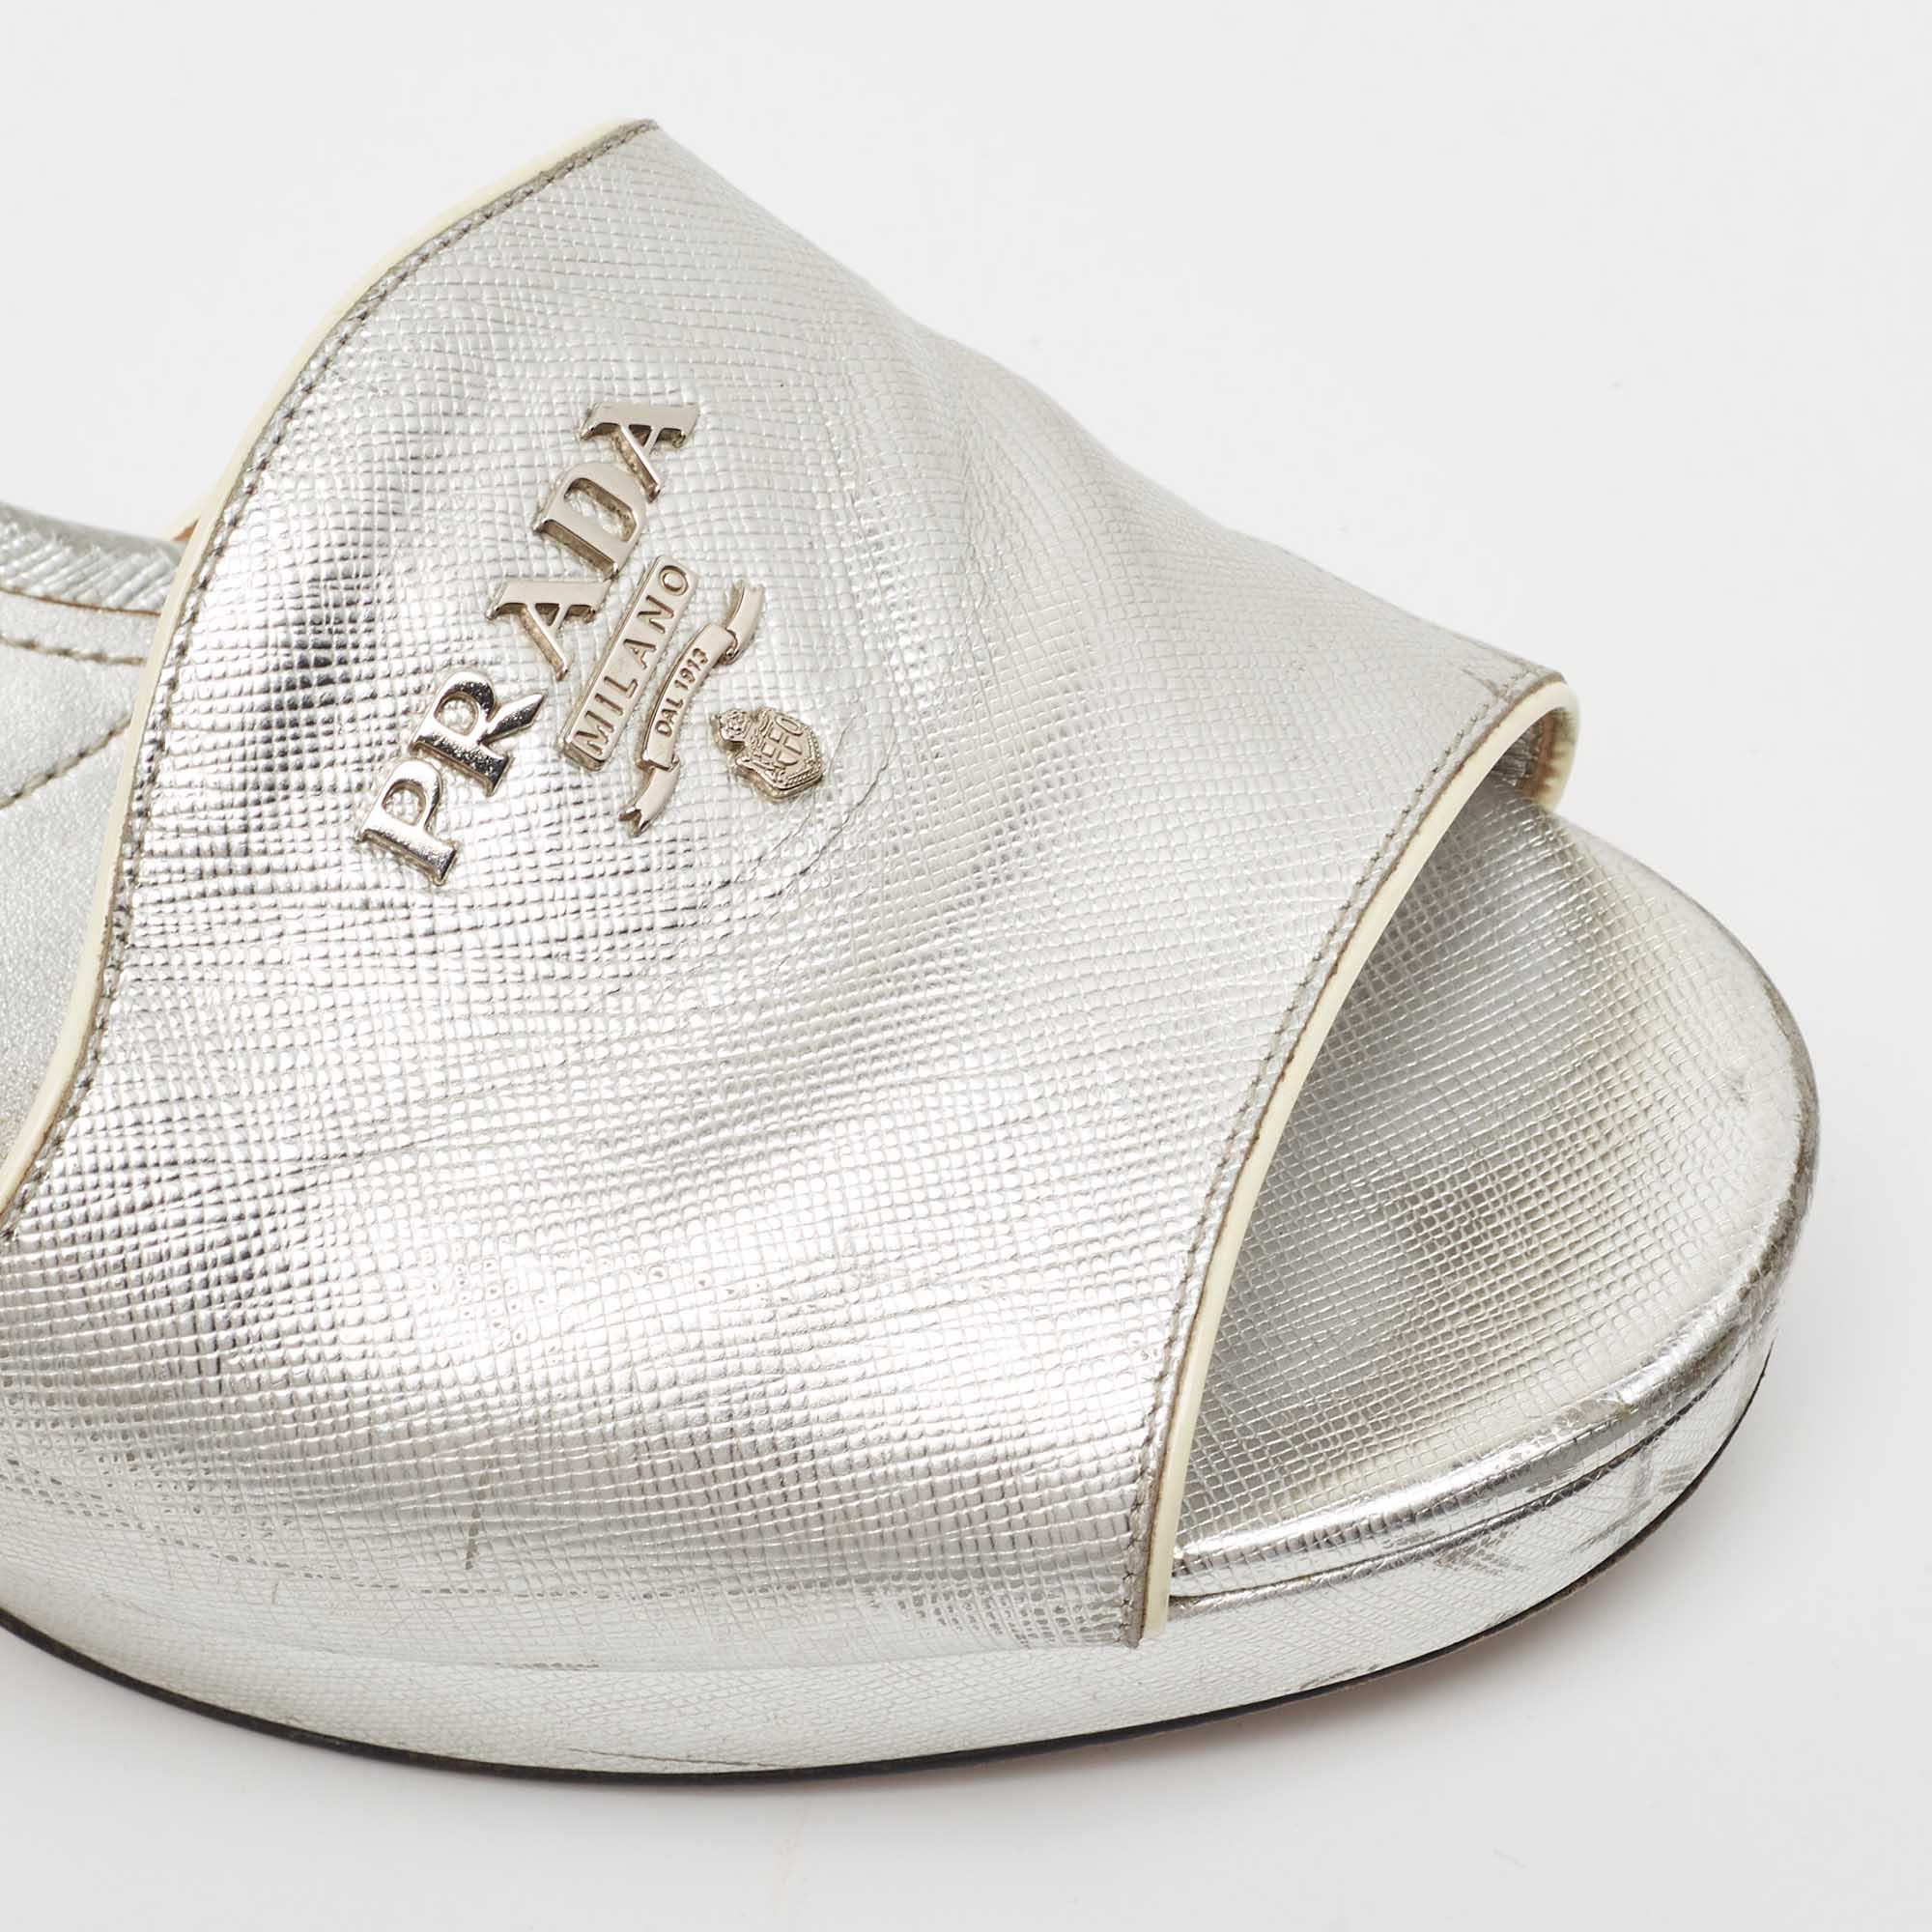 Prada Silver Leather Platform Slide Sandals Size 41